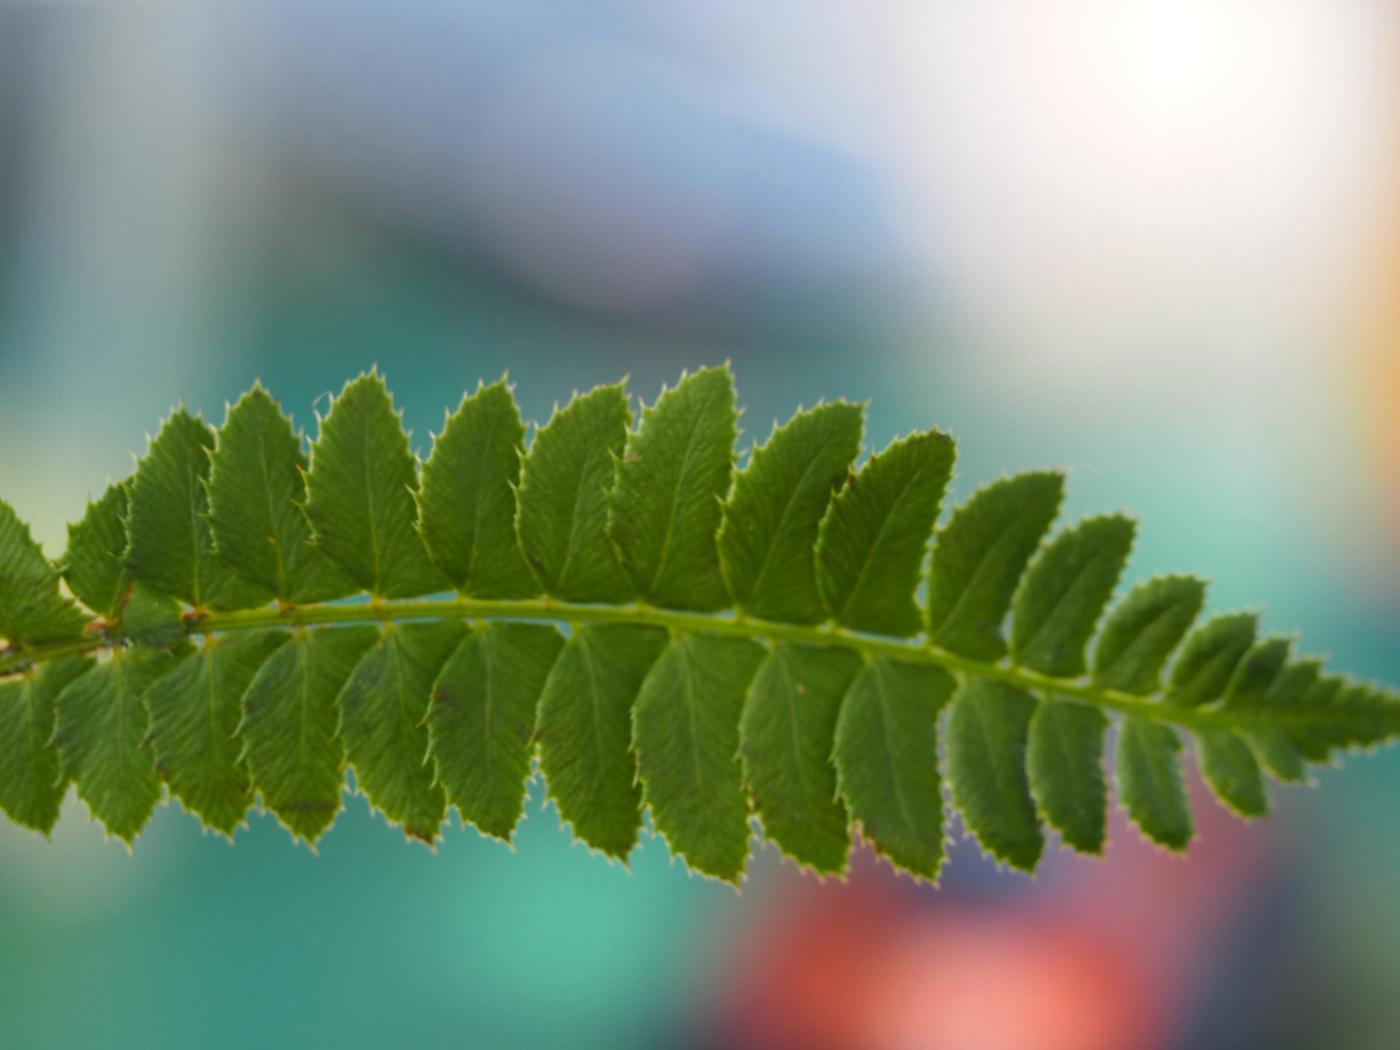 Fern, Holly leaf